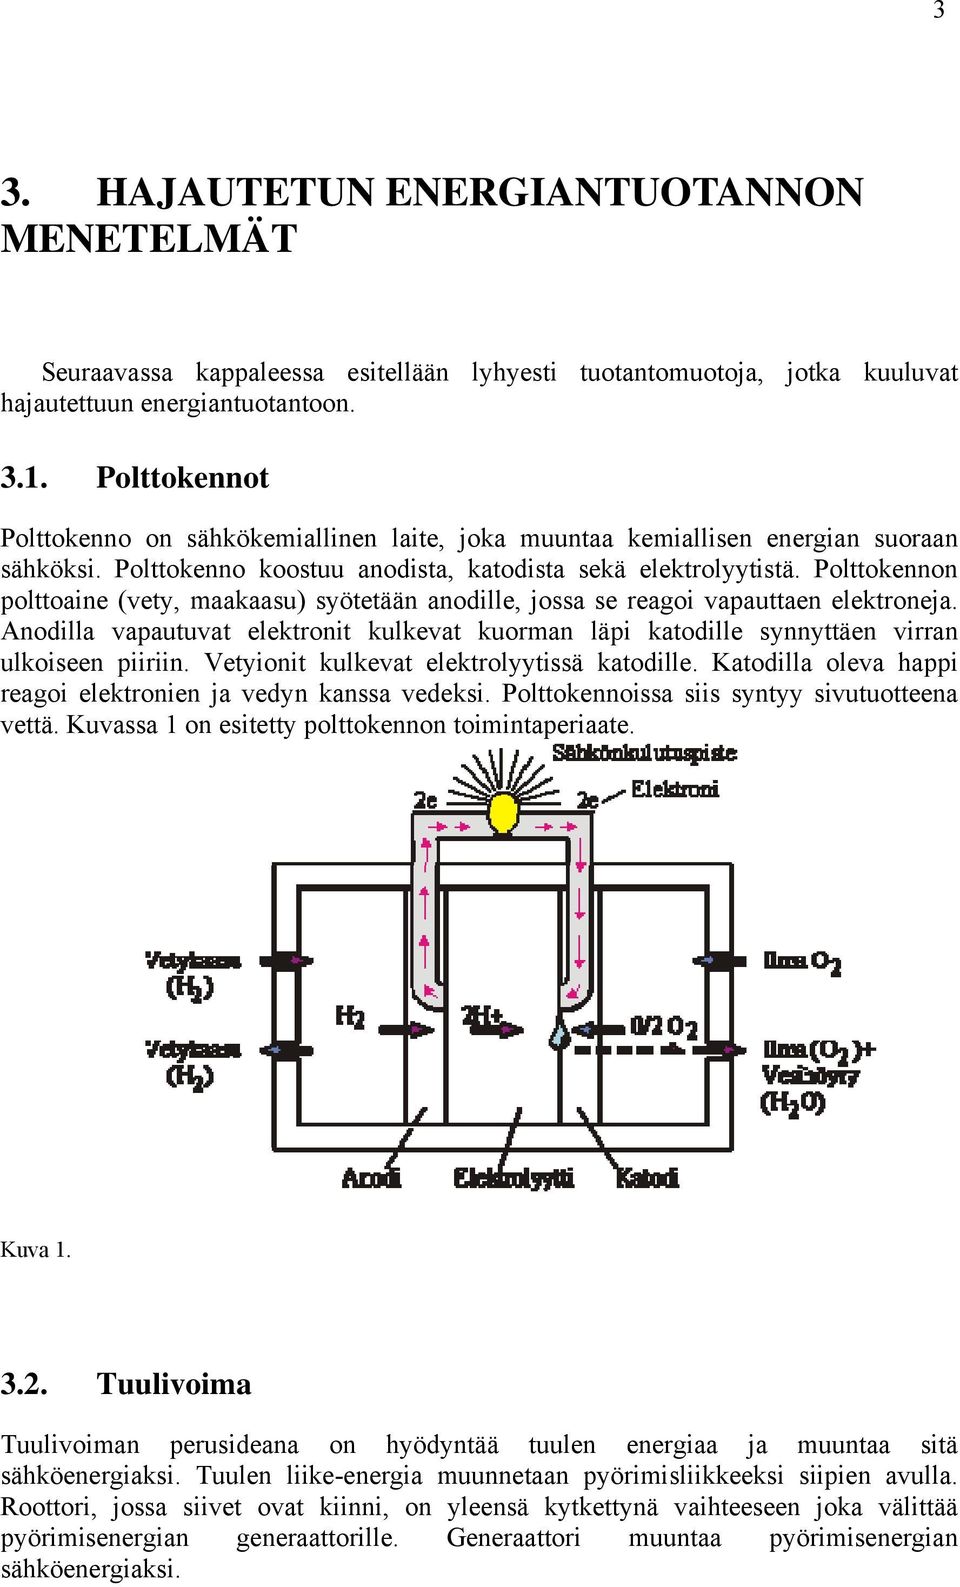 Polttokennon polttoaine (vety, maakaasu) syötetään anodille, jossa se reagoi vapauttaen elektroneja. Anodilla vapautuvat elektronit kulkevat kuorman läpi katodille synnyttäen virran ulkoiseen piiriin.